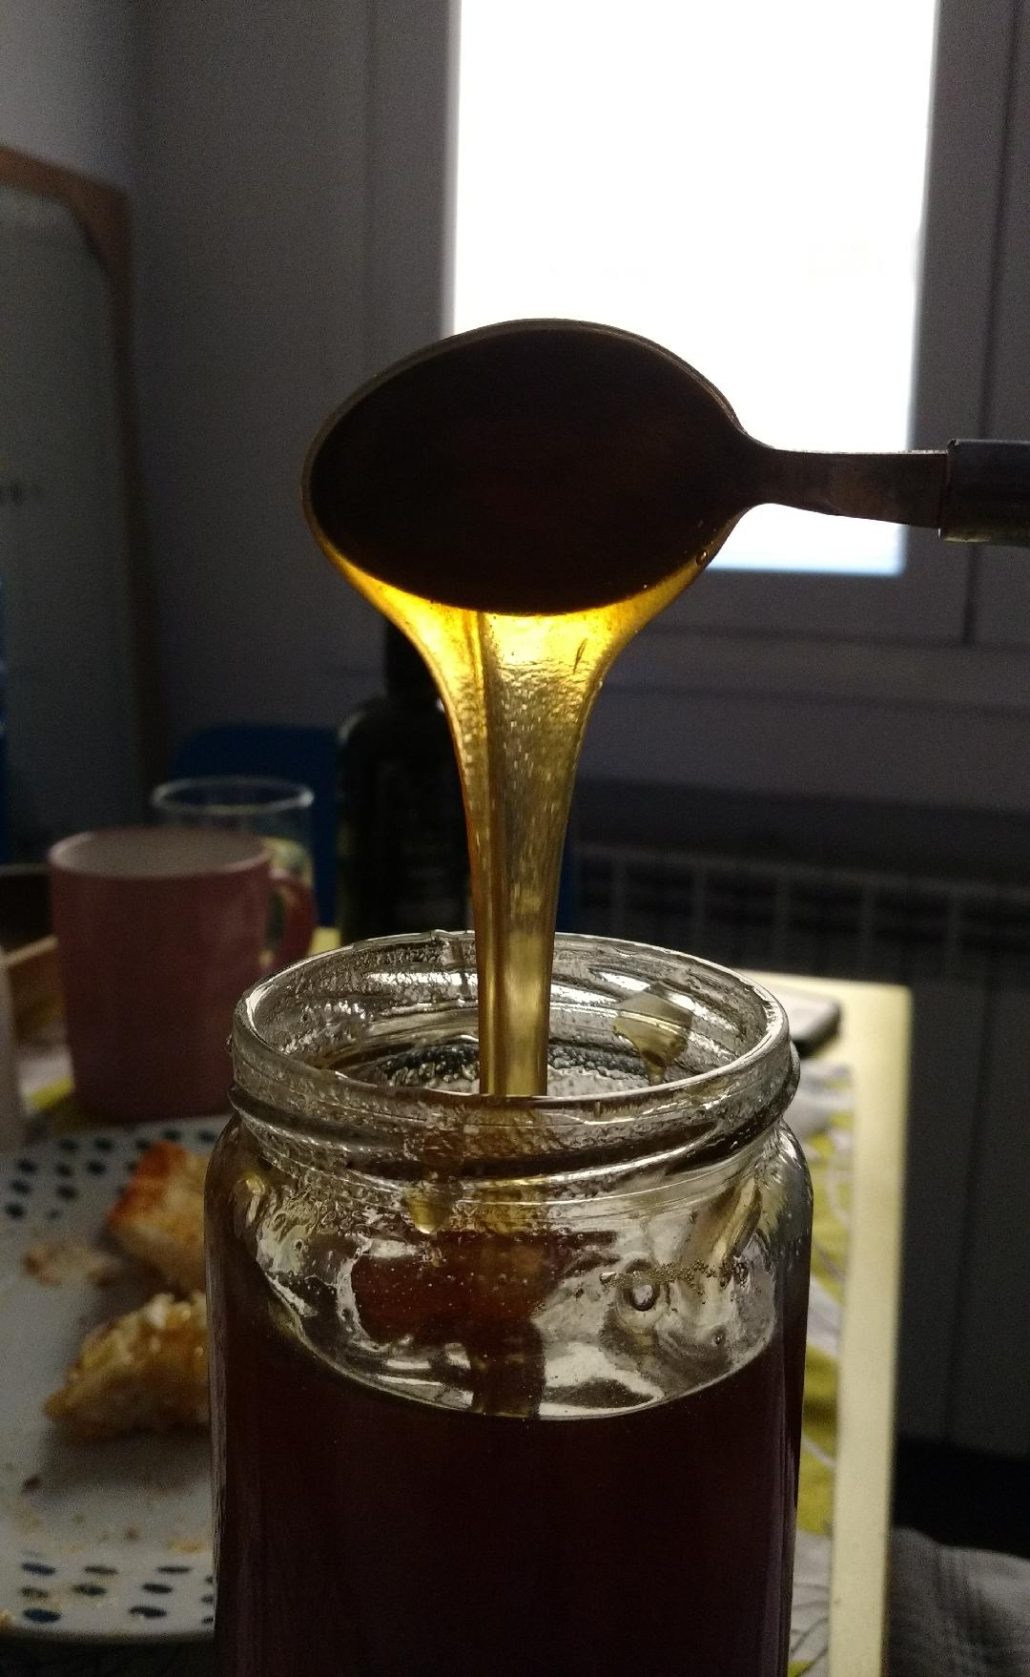 Pot de miel